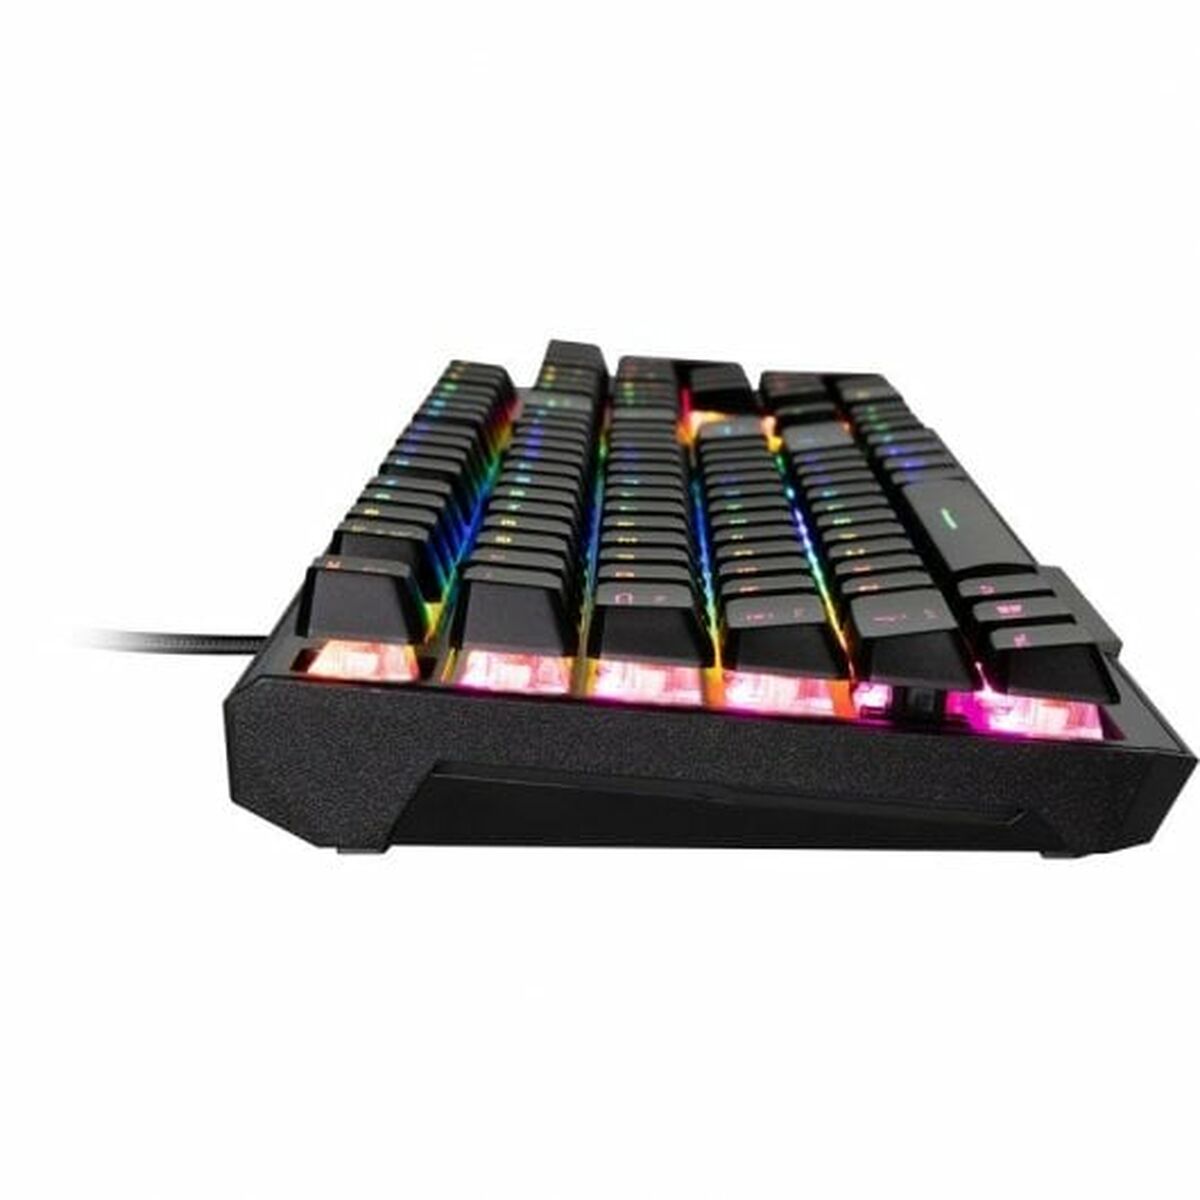 Keyboard MSI GK41  Black